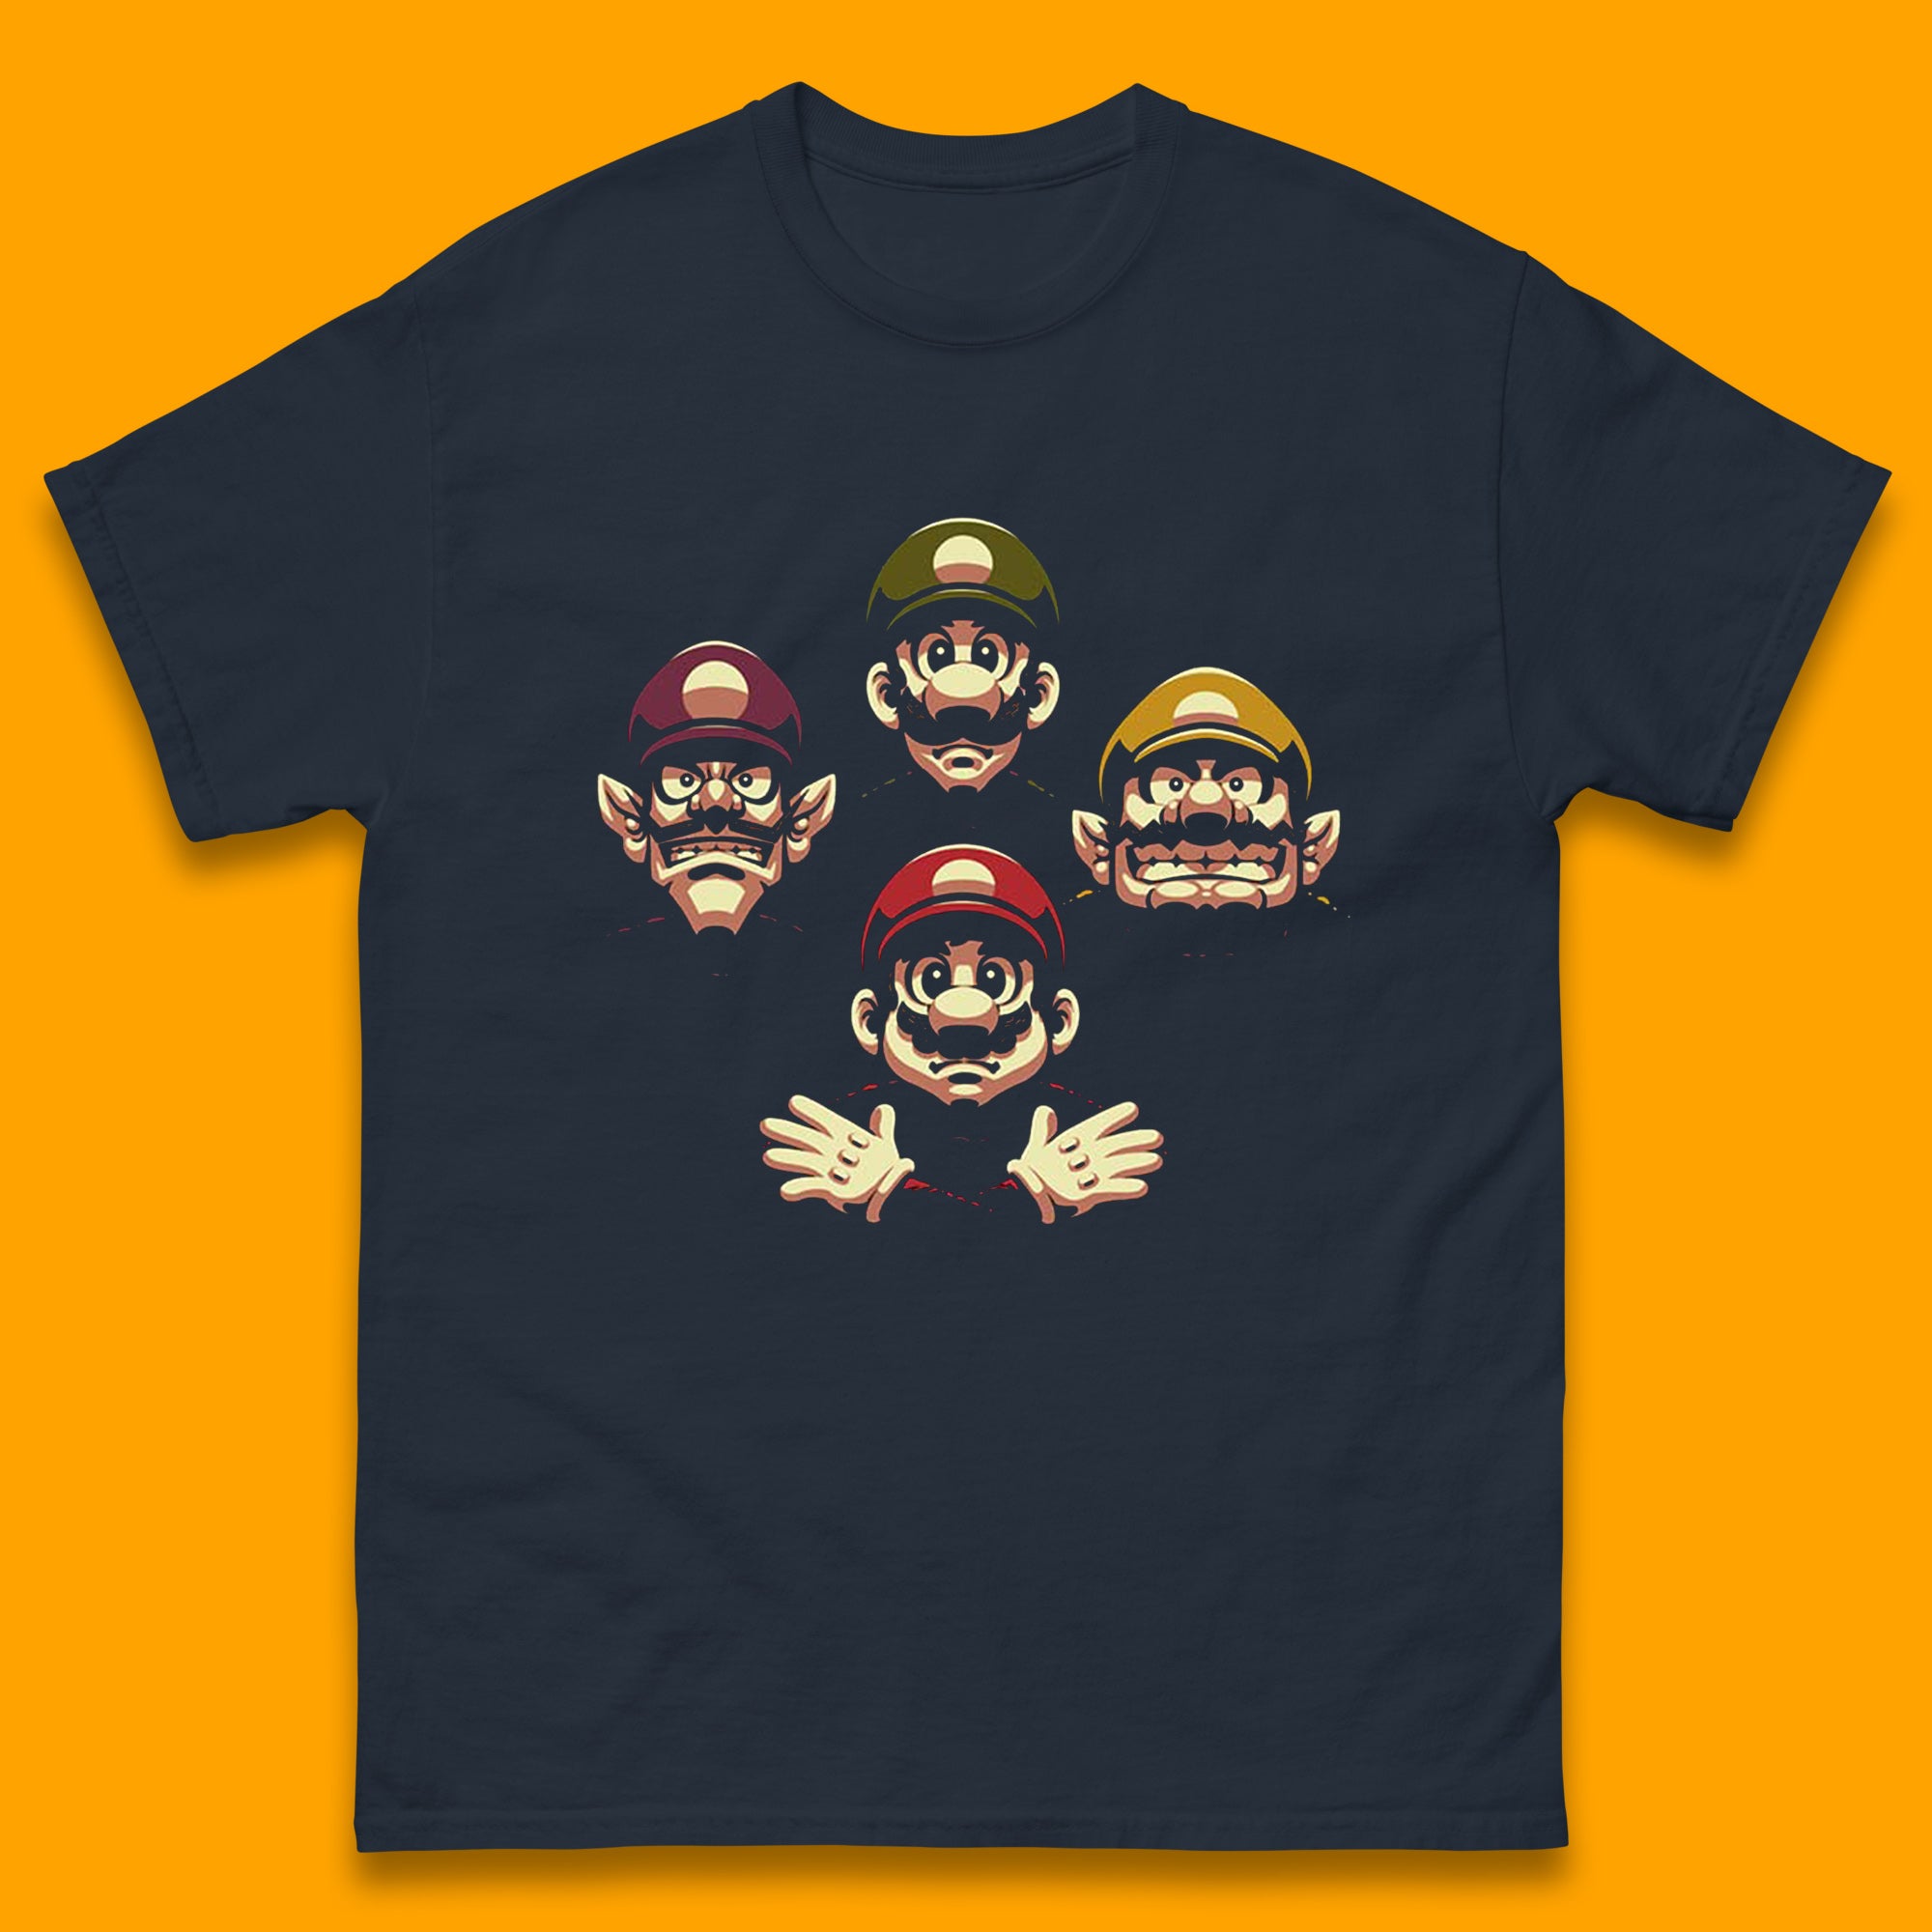 Mario Characters Funny Old Faces Super Mario, Luigi, Wario And Waluigi Game Players Mario Bro Toad Retro Gaming Mens Tee Top